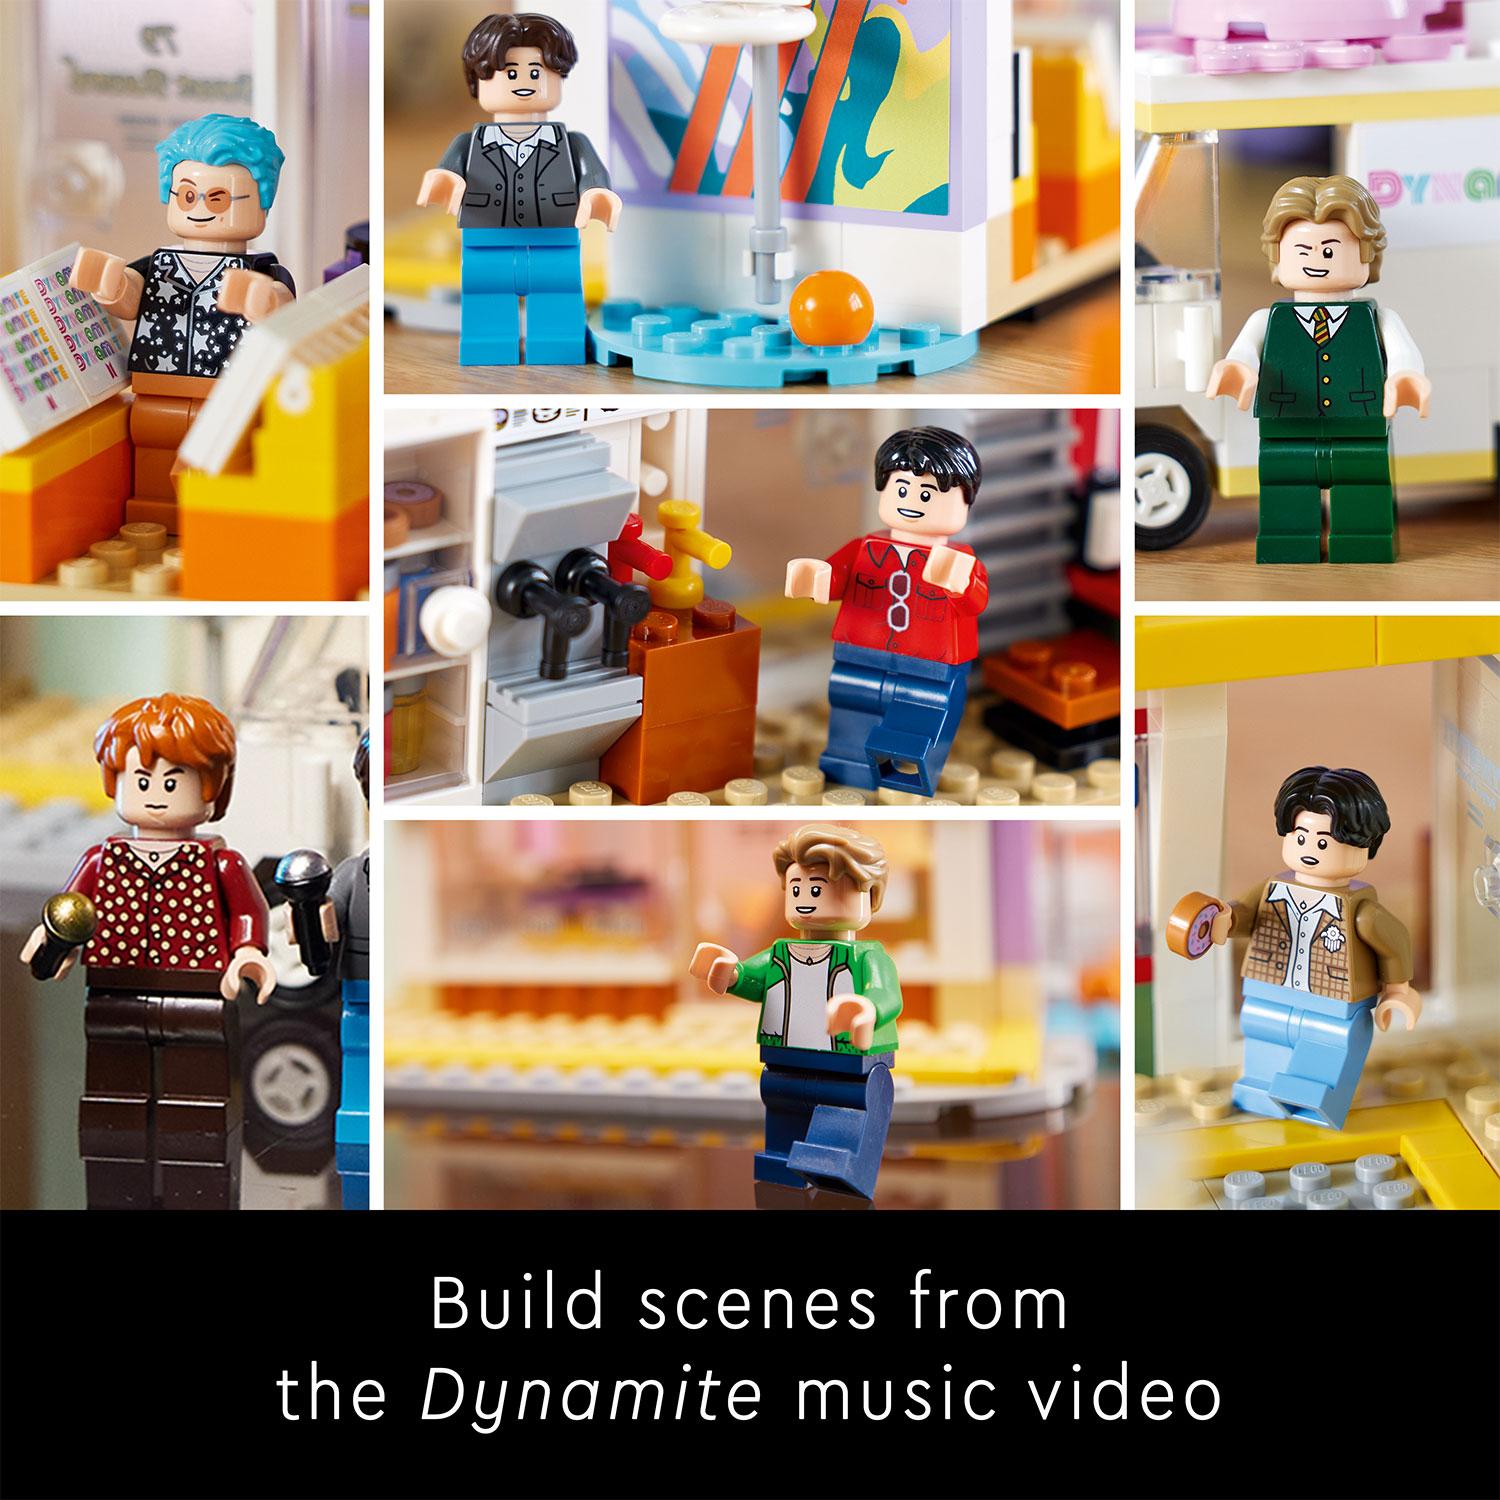 LEGO Ideas 21339 Đồ chơi lắp ráp BTS Dynamite (749 chi tiết)